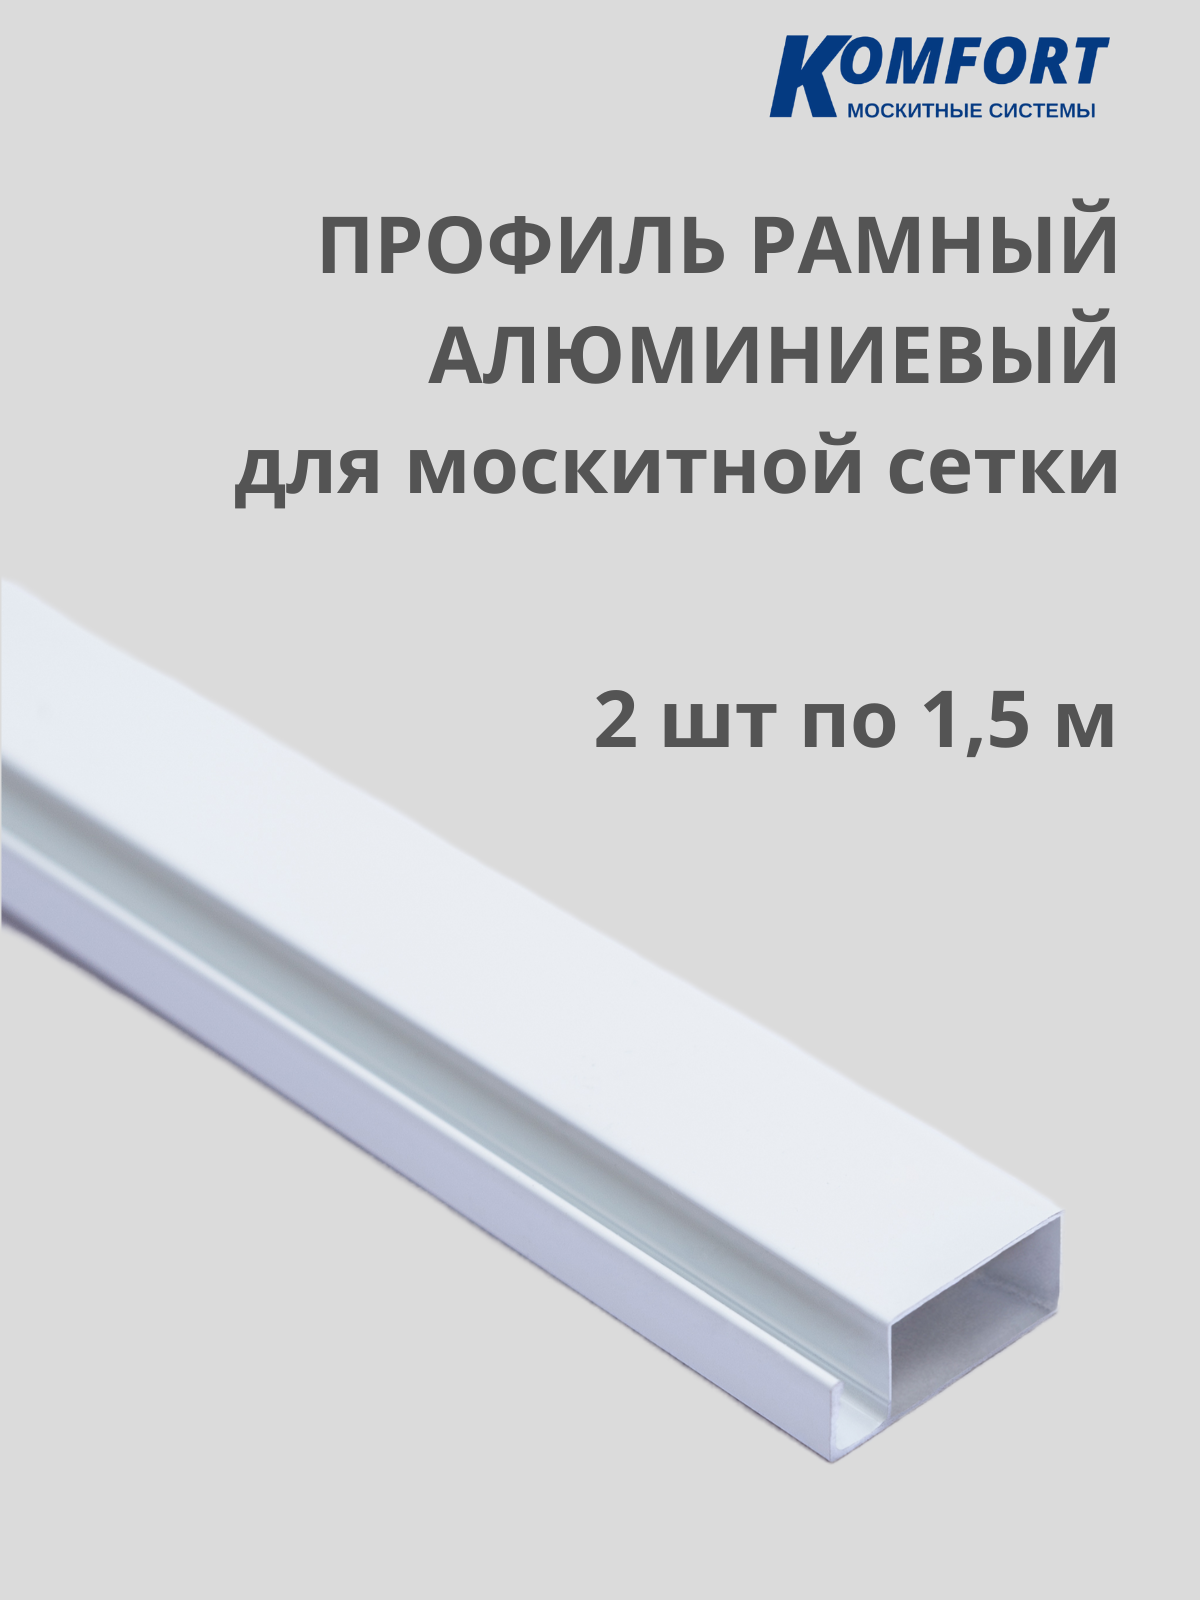 Профиль для москитной сетки рамный алюминиевый белый 1,5 м 2 шт